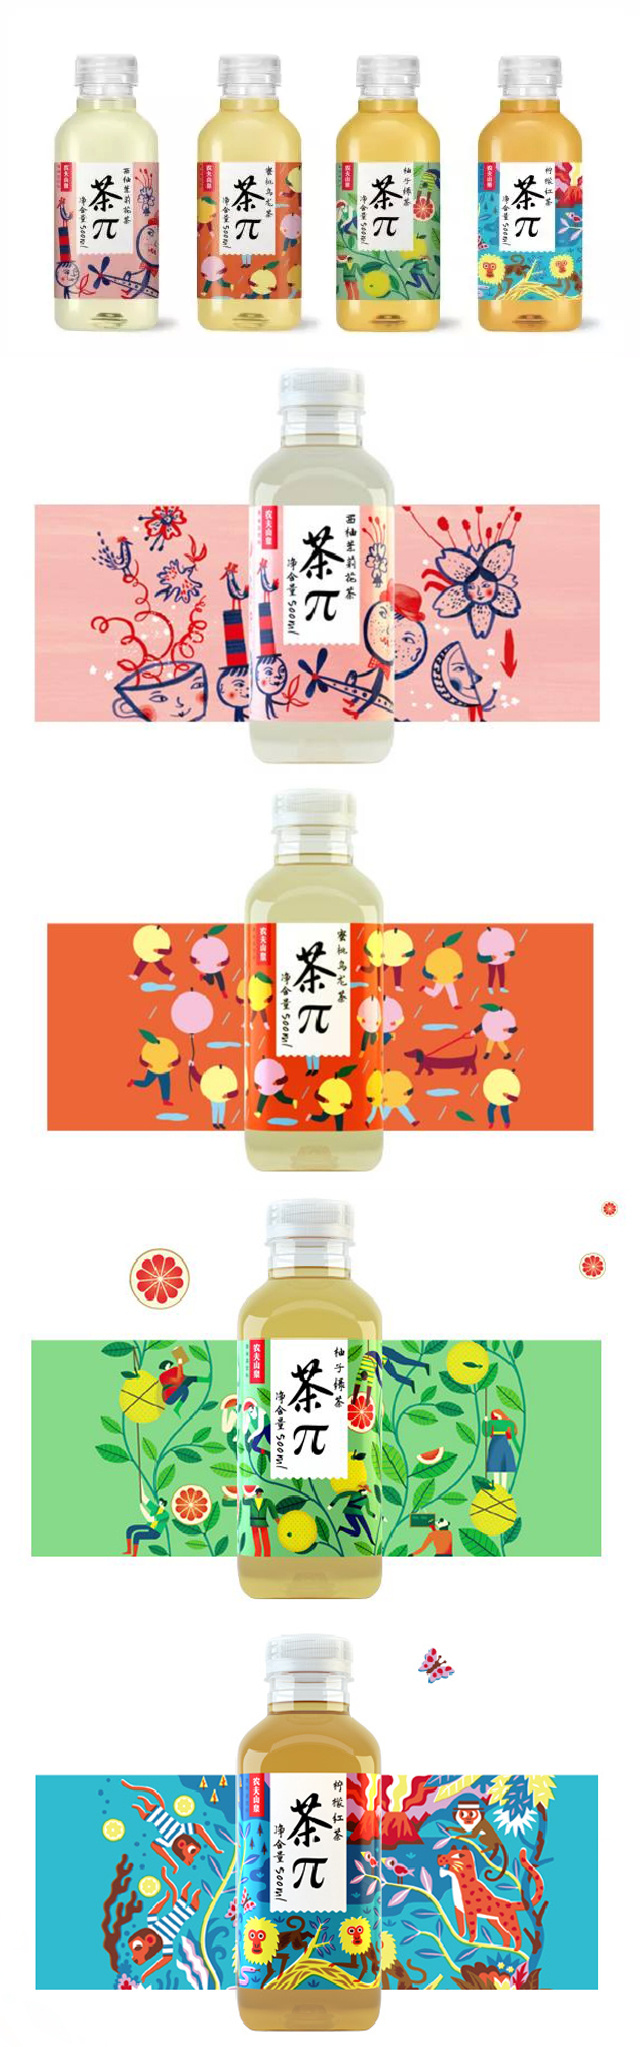 農夫山泉茶飲料瓶設計